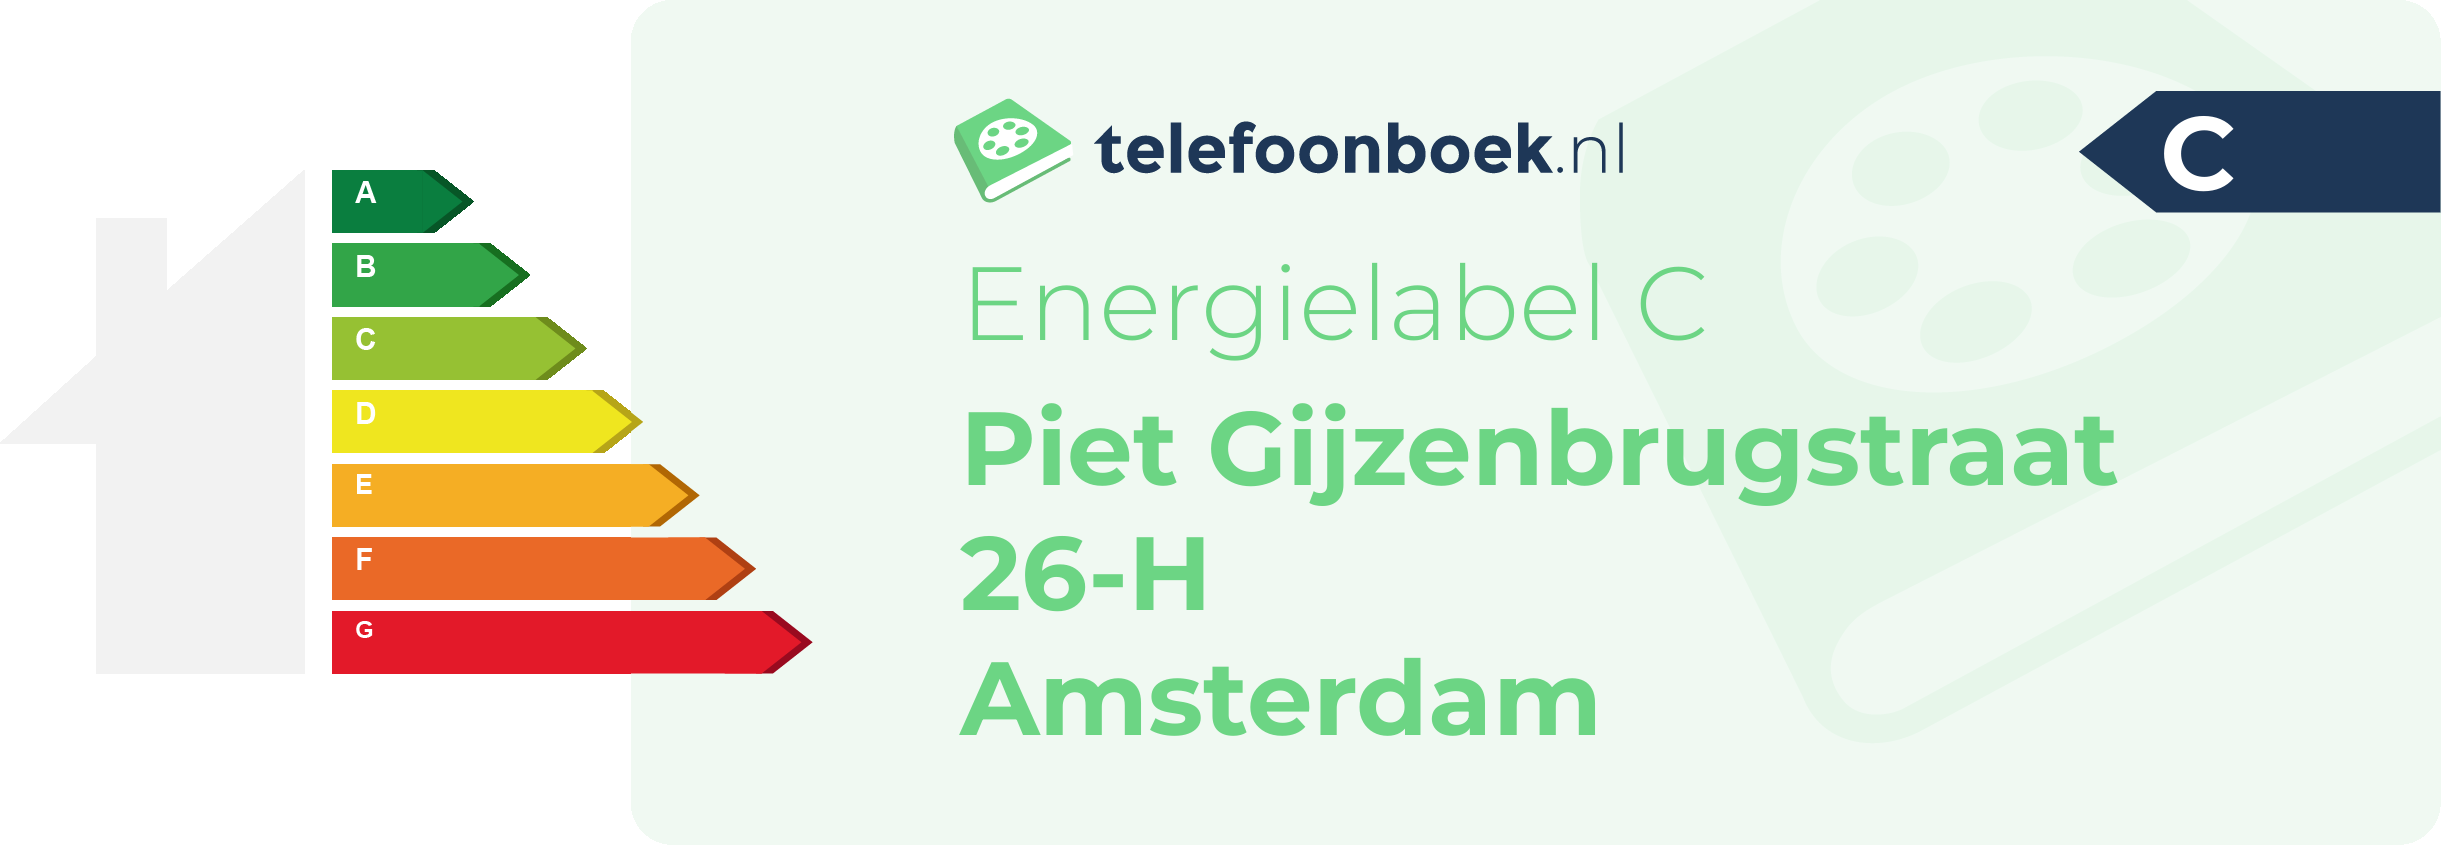 Energielabel Piet Gijzenbrugstraat 26-H Amsterdam